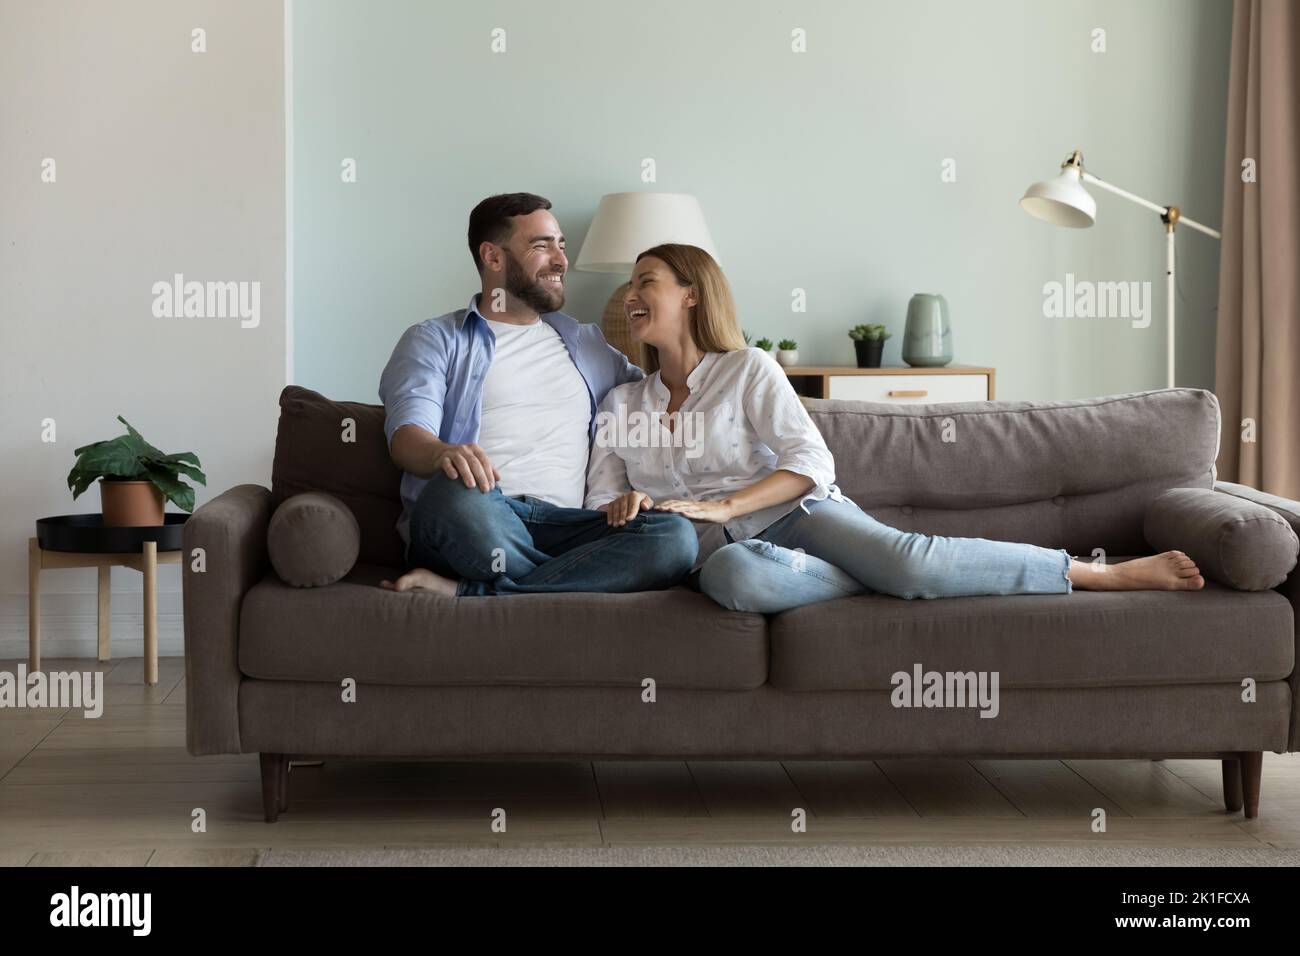 Glückliches fröhliches Ehepaar, das sich auf einer bequemen Couch ausruhte Stockfoto